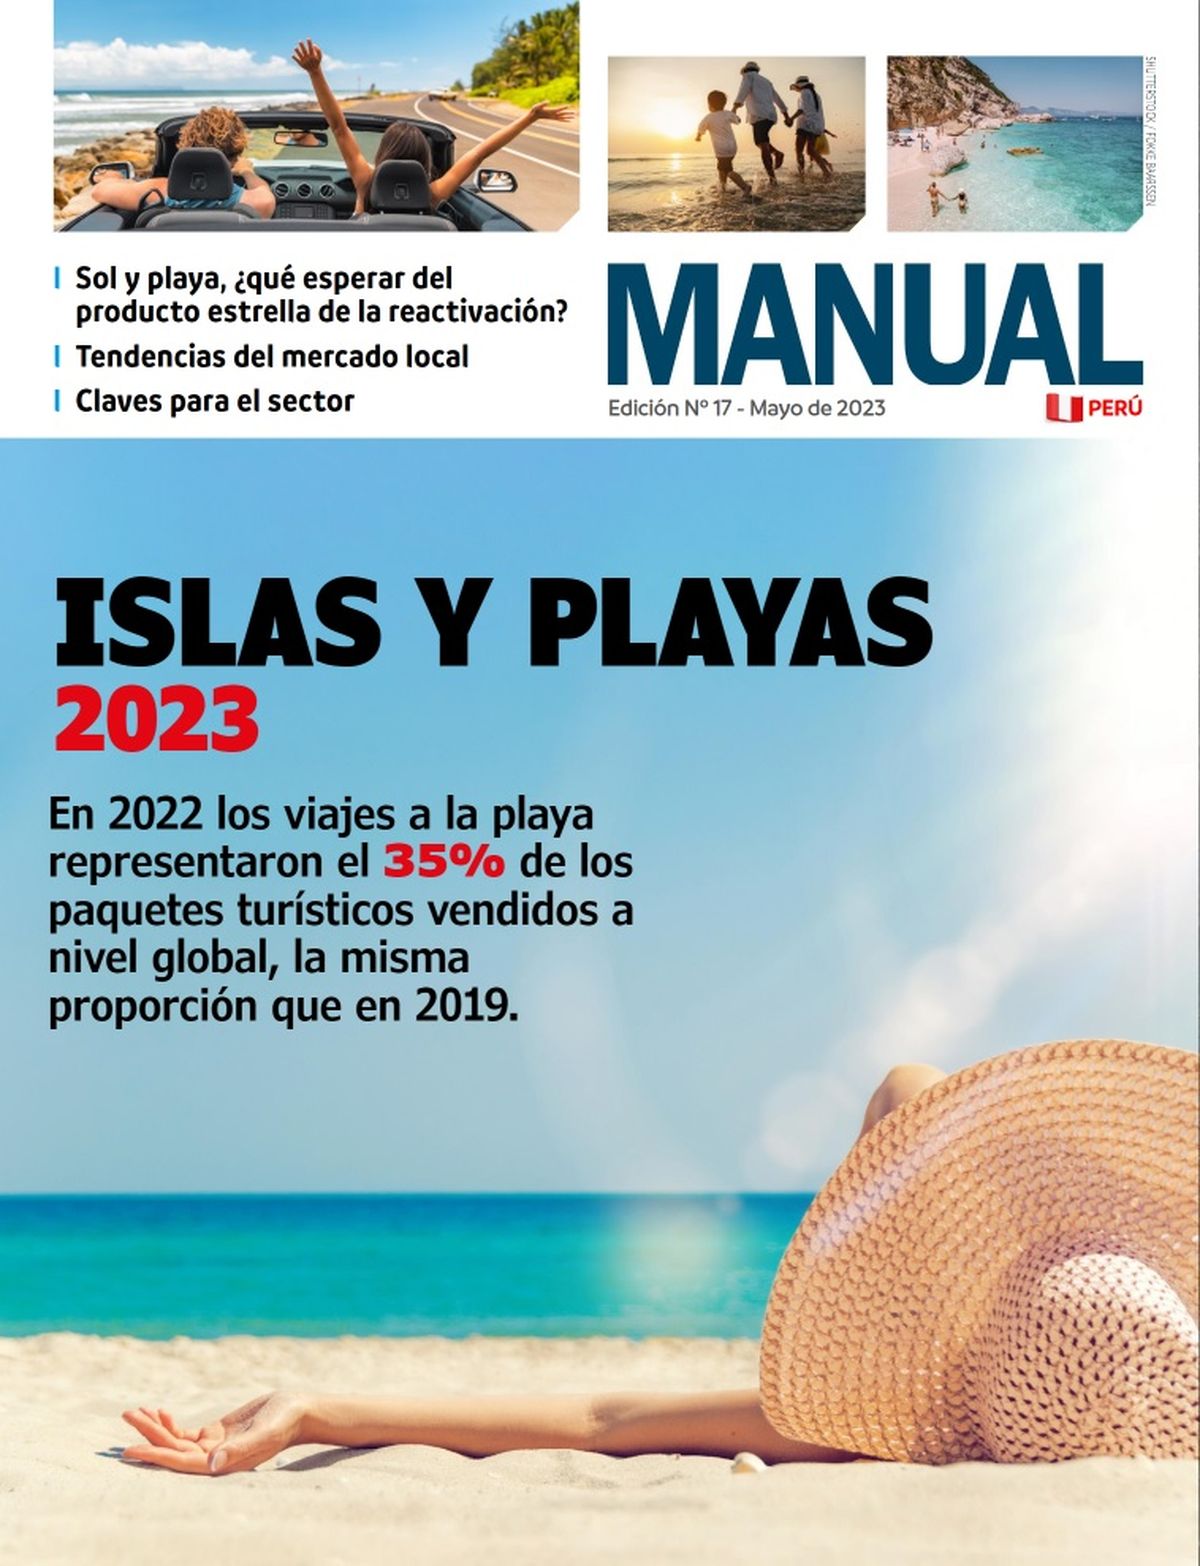 El Manual Islas y Playas 2023 es una útil herramienta para los agentes de viajes ya que El Manual Islas y Playas 2023 es una útil herramienta para los agentes de viajes ya que reúne la información actualizada y necesaria a la hora de vender